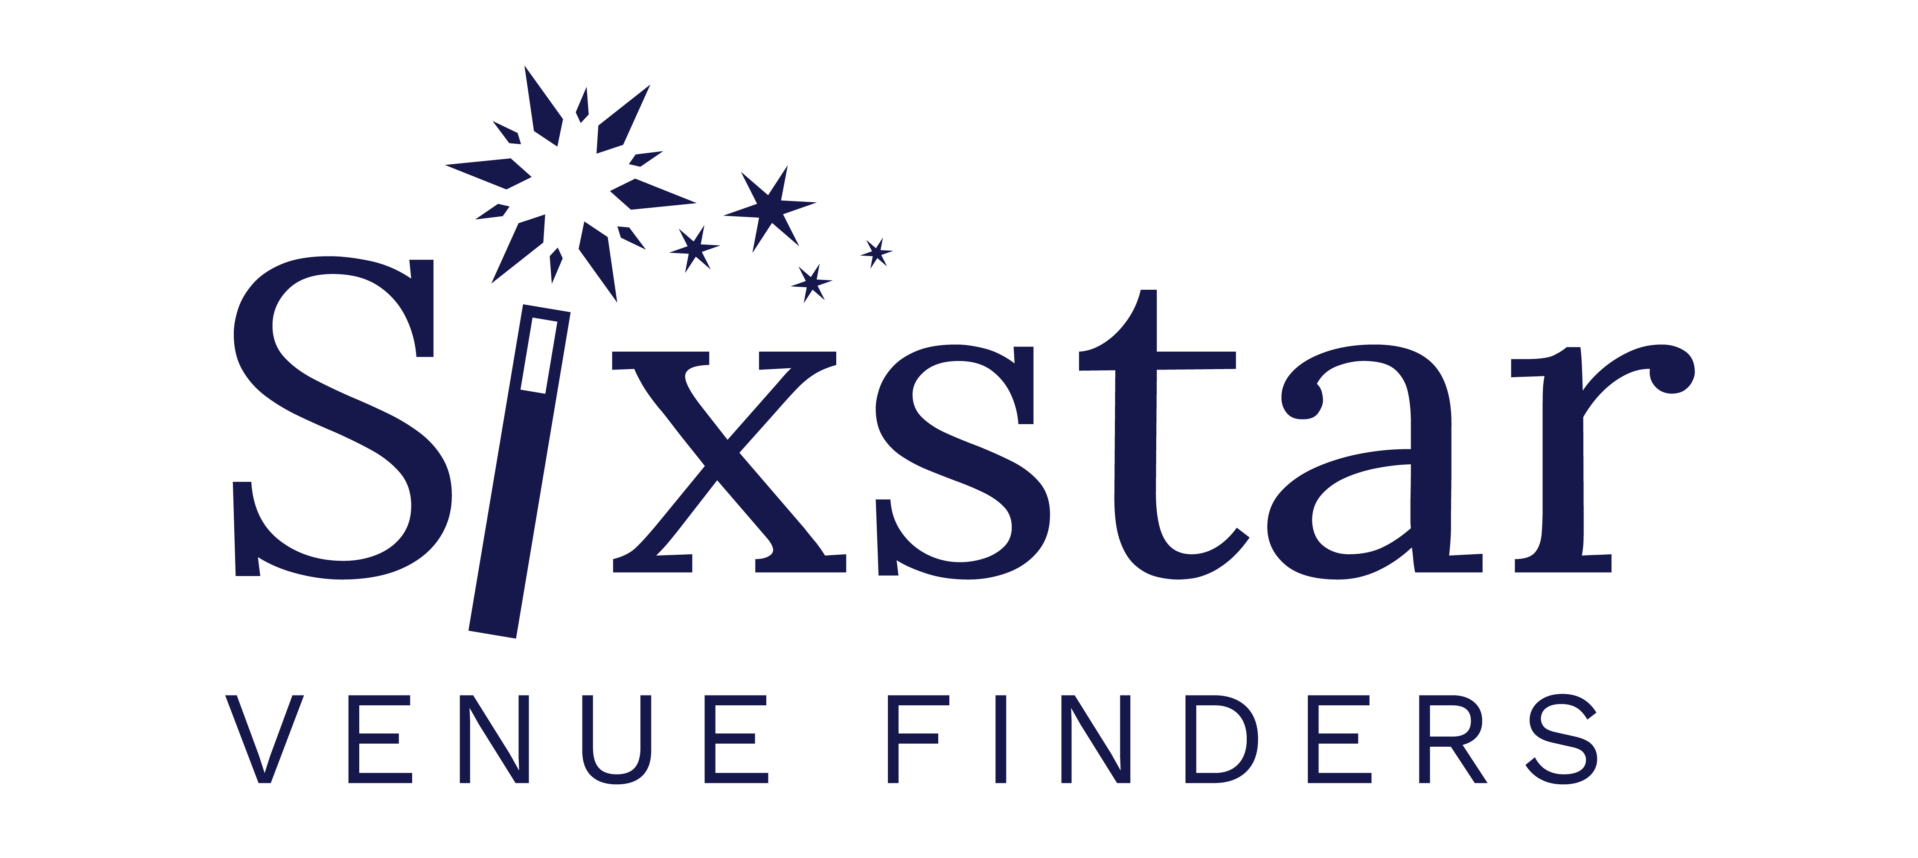 Sixstar logo large